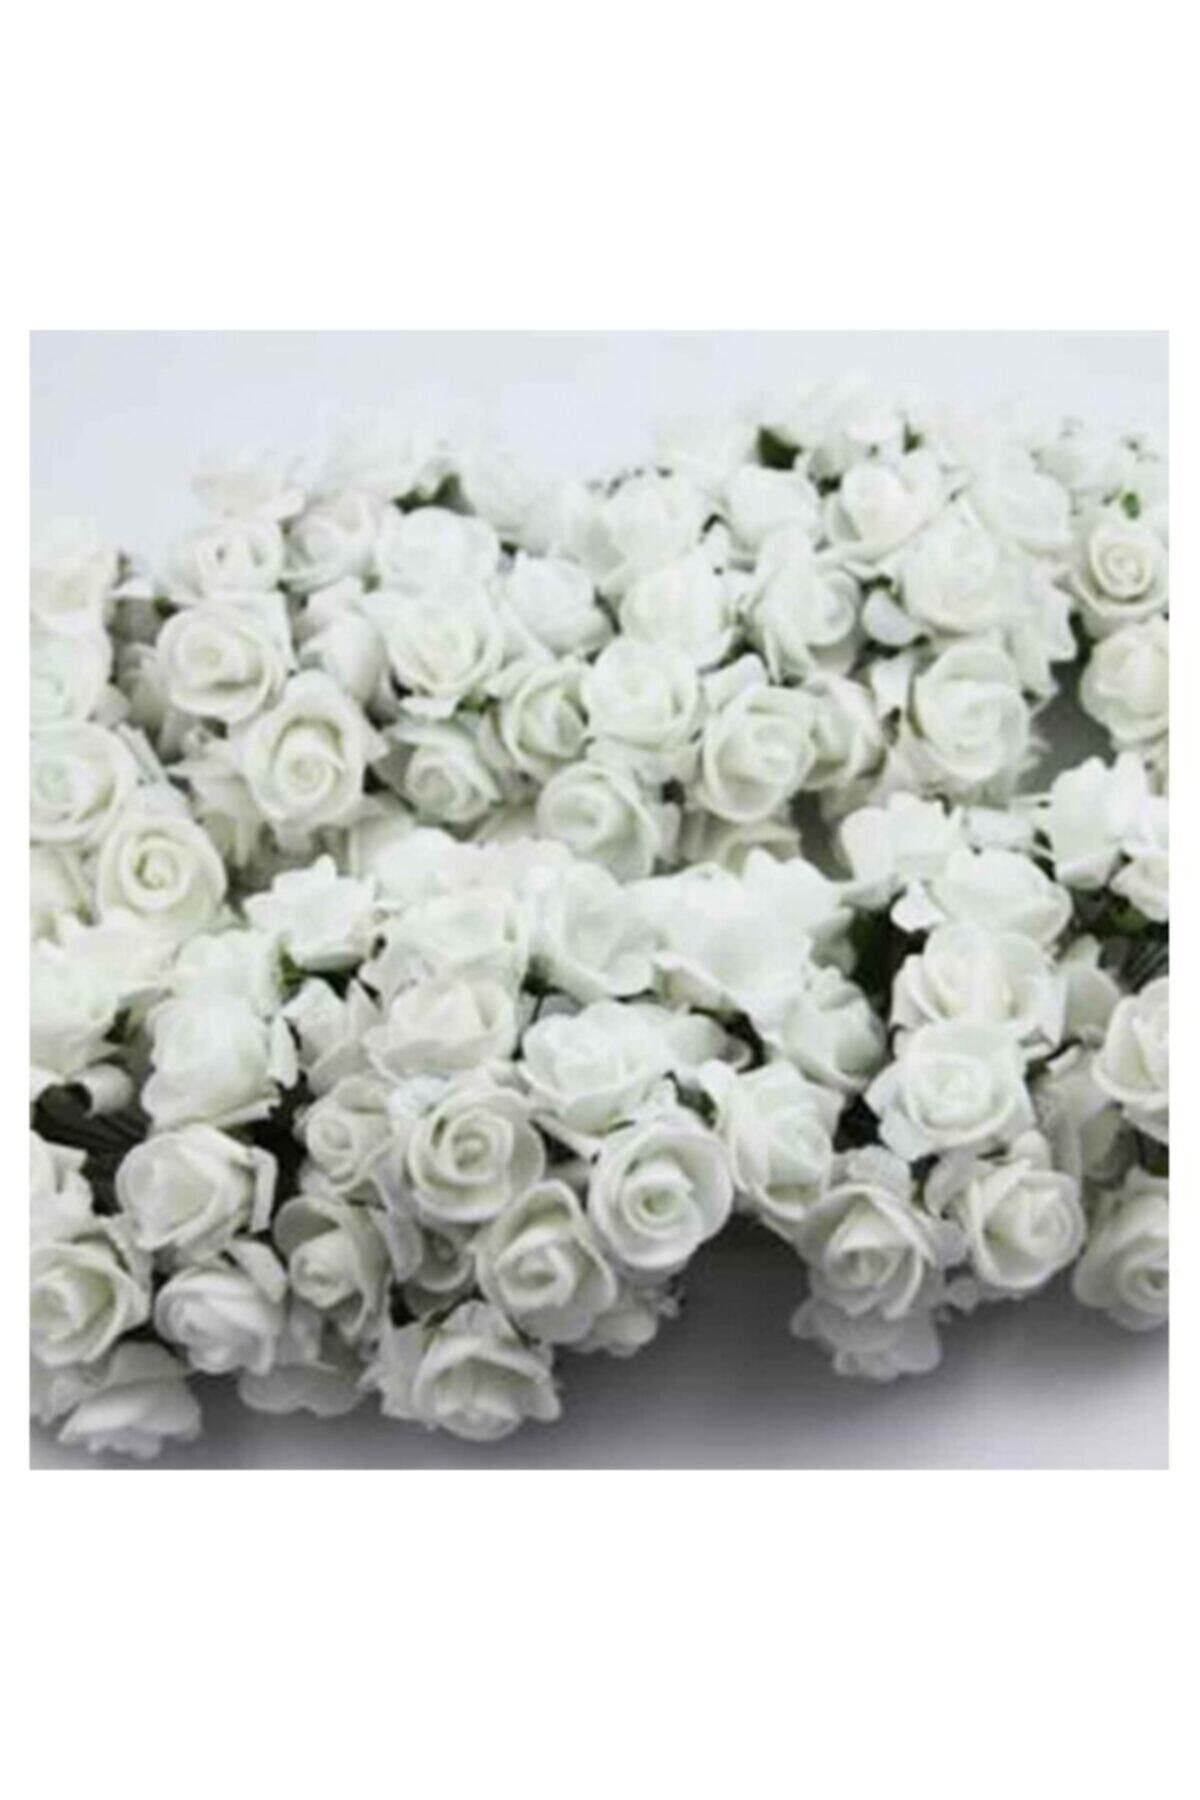 ELITETIME Lateks Eva Yapay Çiçek Gül Beyaz ( 2 Cm* 2 Cm ) ( 144 Adet)